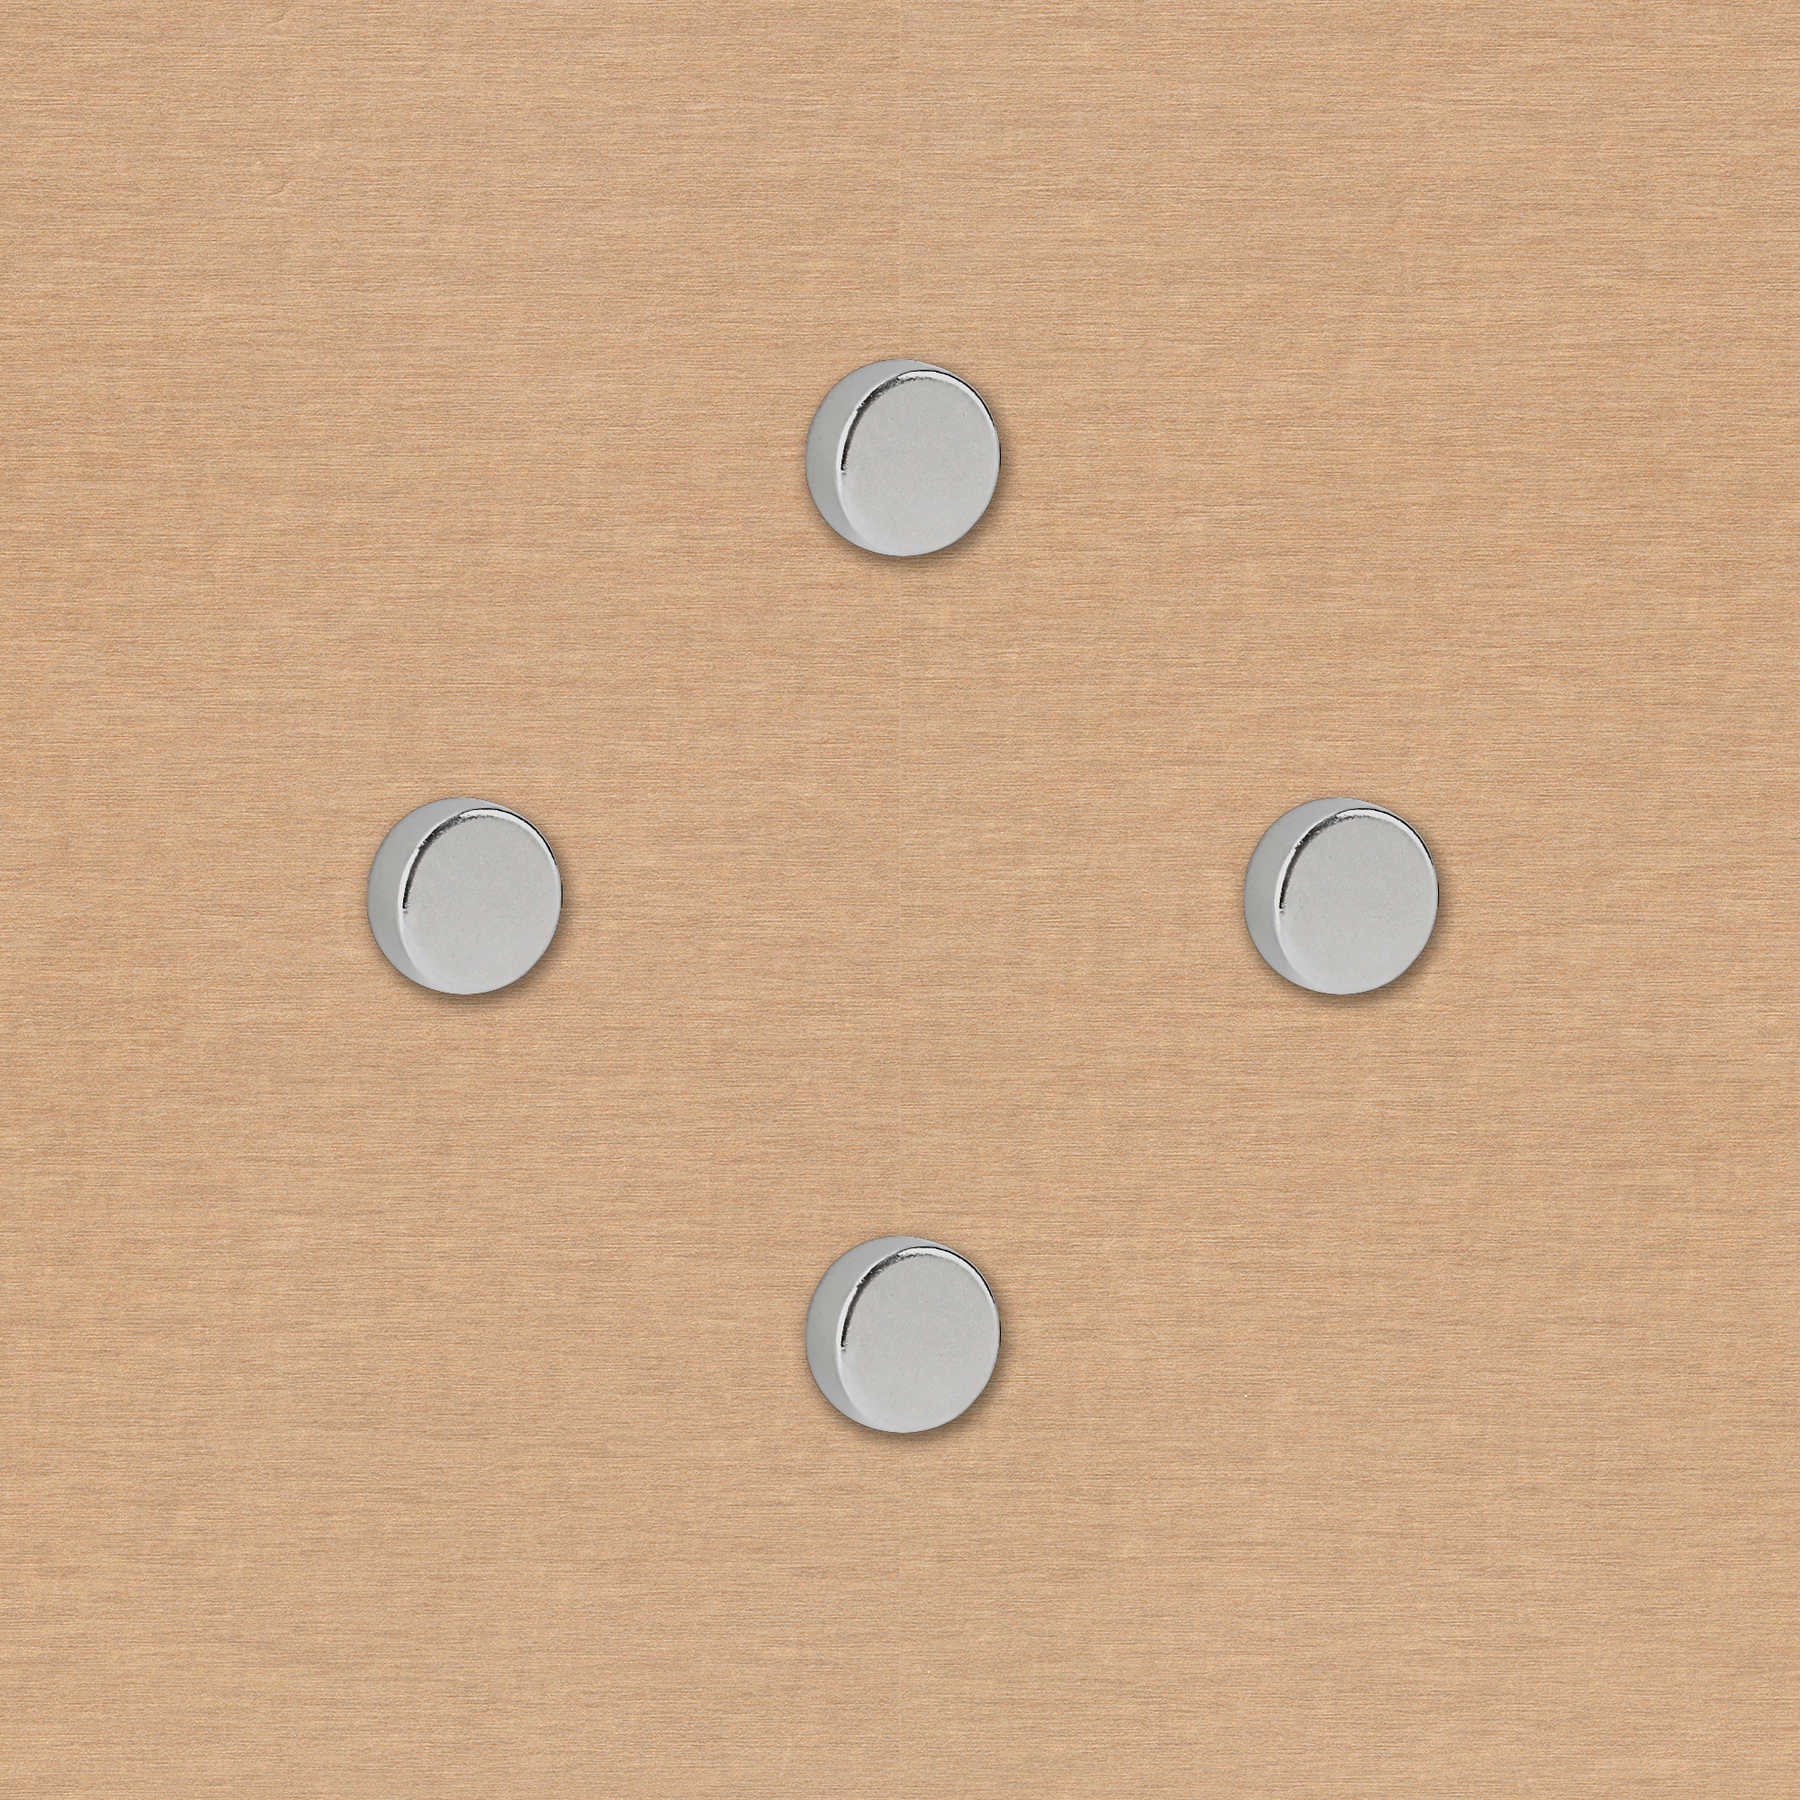             4er-Set runde Starkmagneten in 20 x 5 mm
        